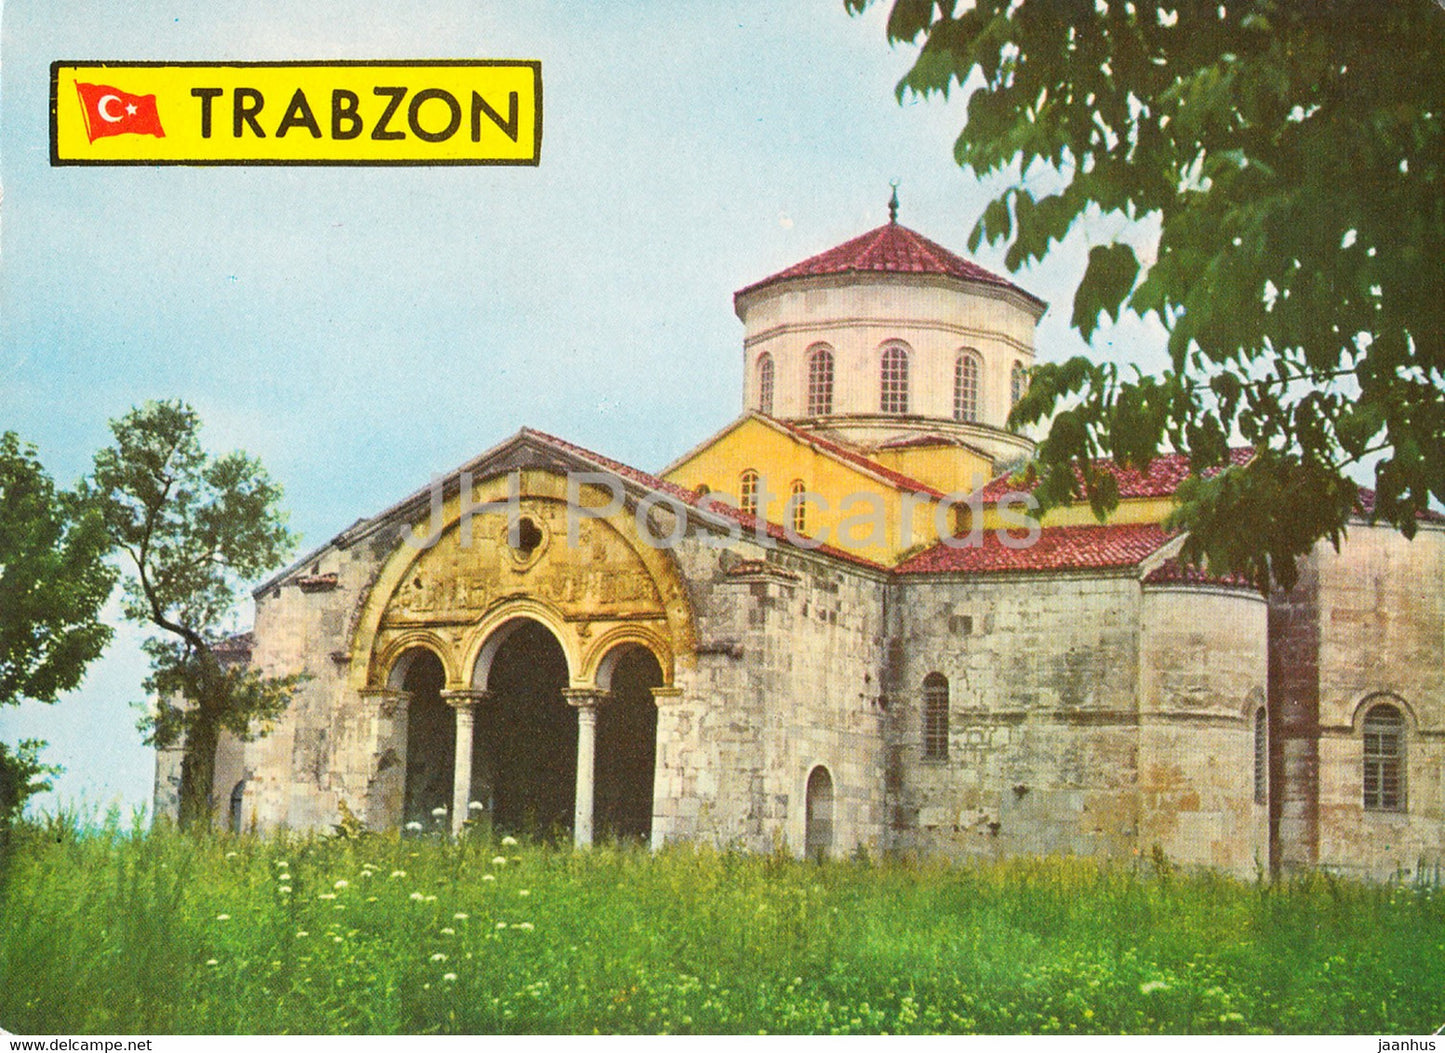 Trabzon - Green Black Sea Territory - St Sophia Museum - Turkey - unused - JH Postcards